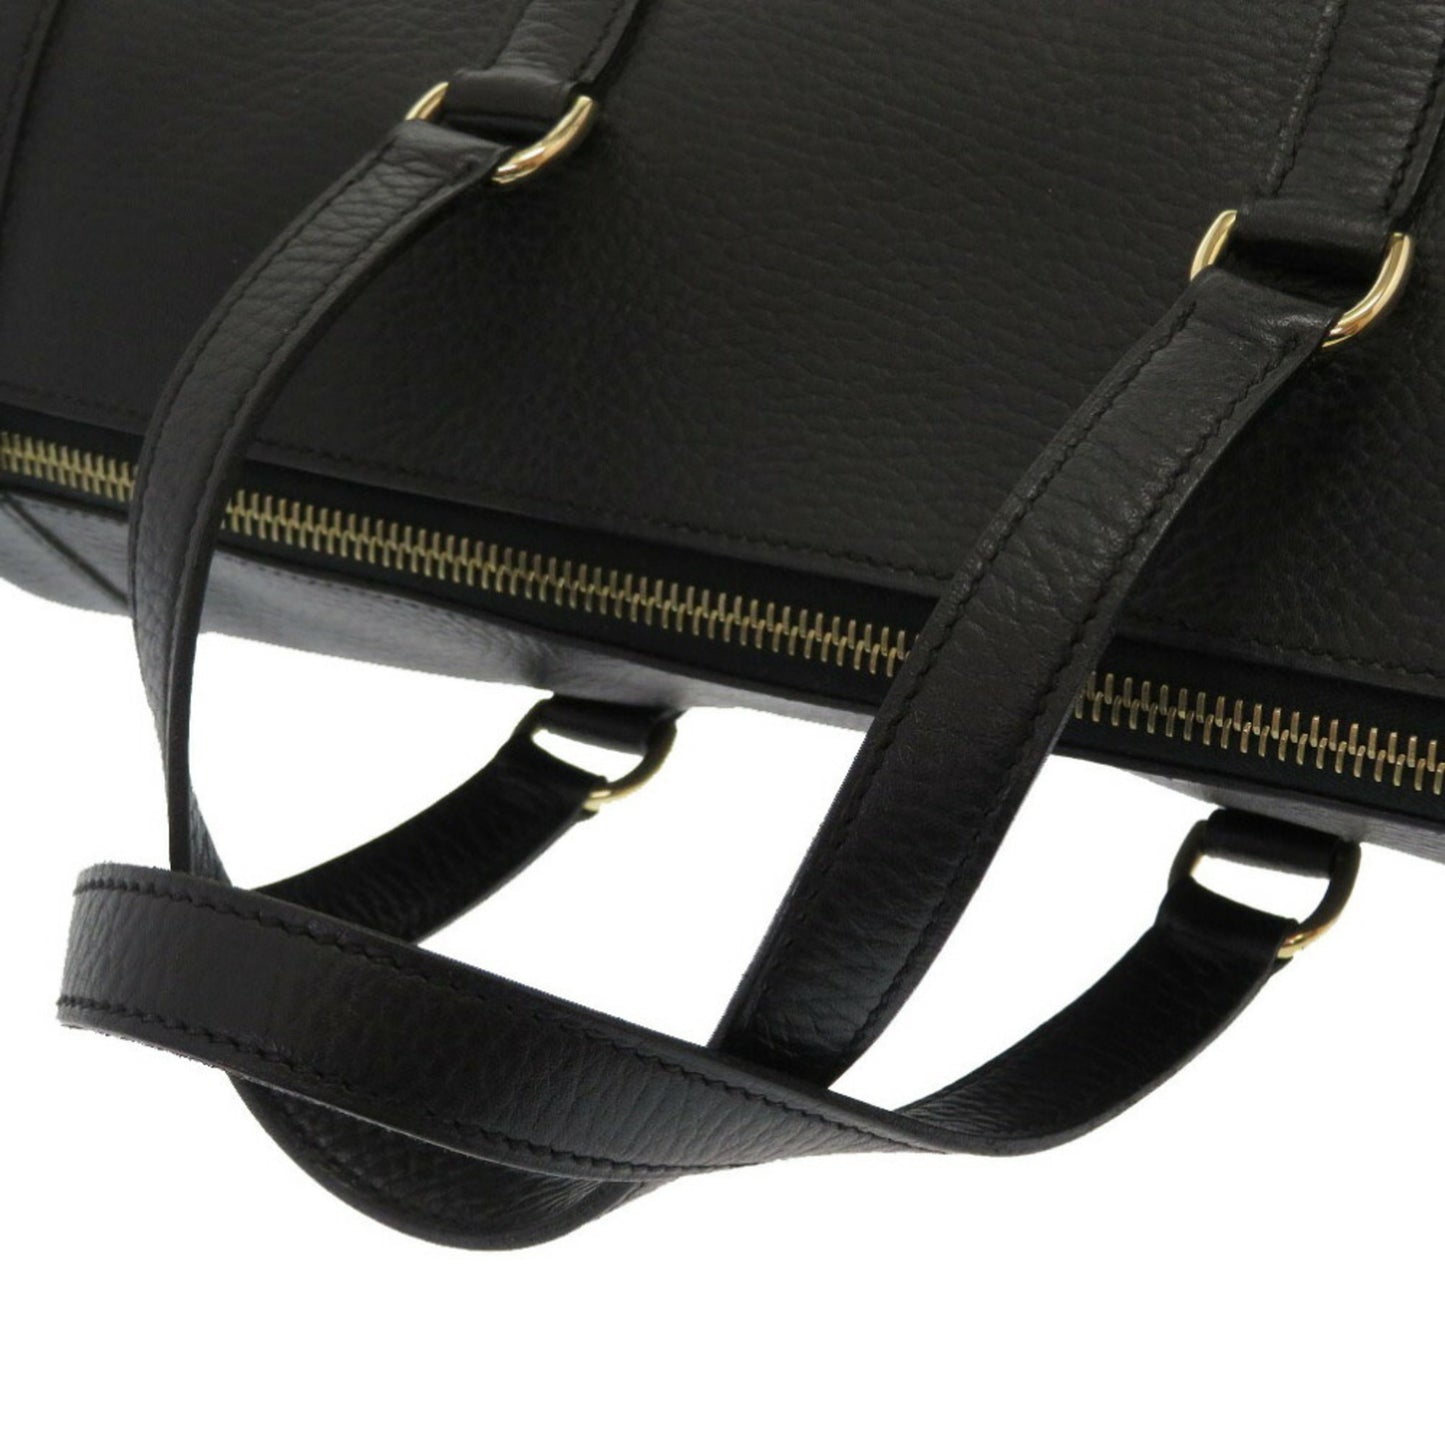 Hermes Women's Black Leather Hermes Handbag in Black